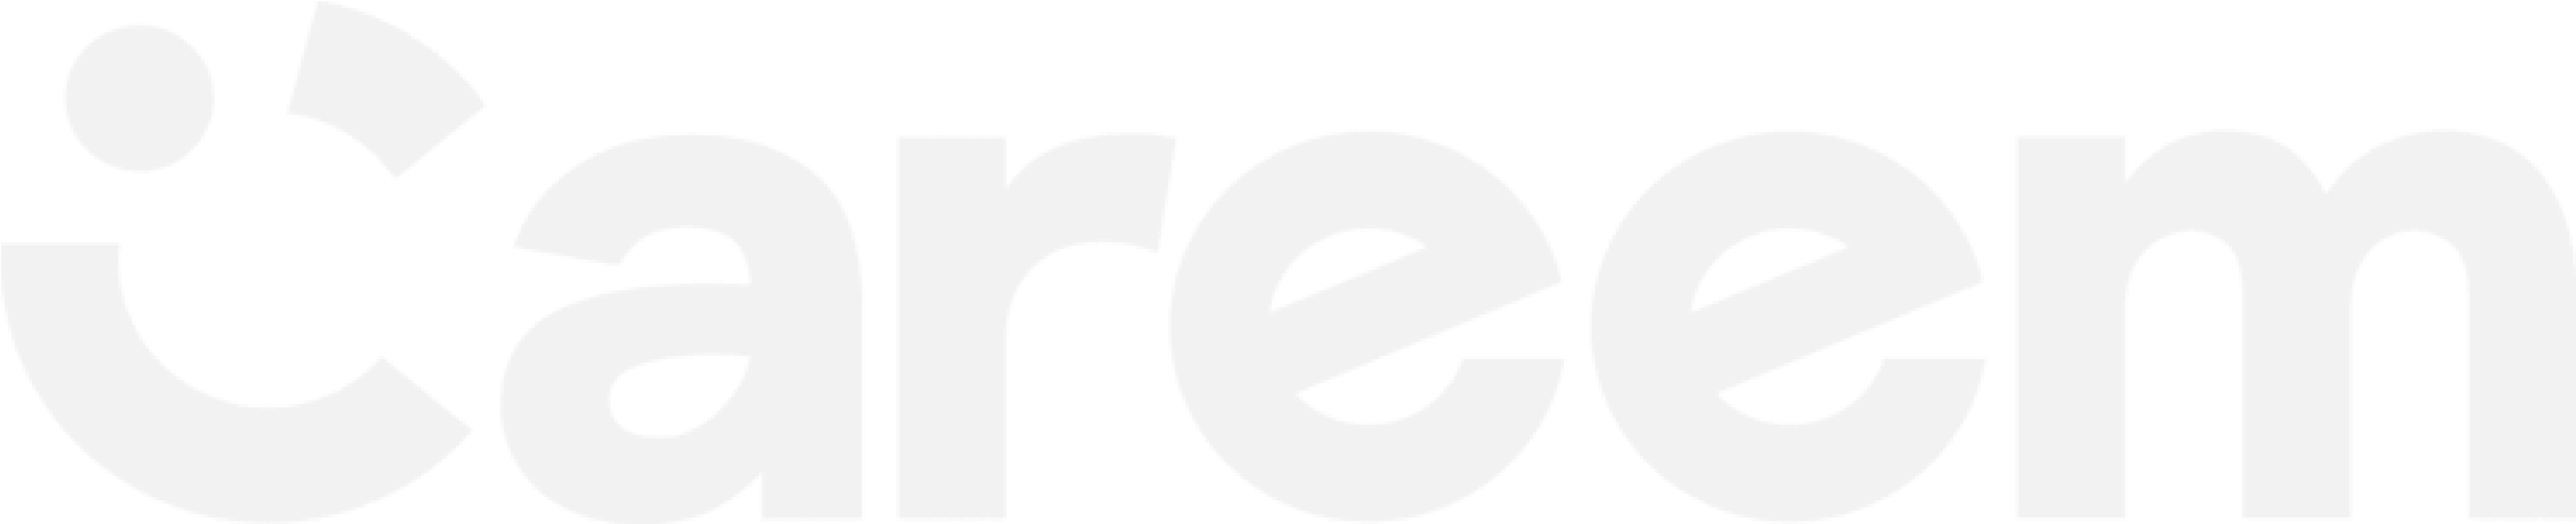 CAREEM logo